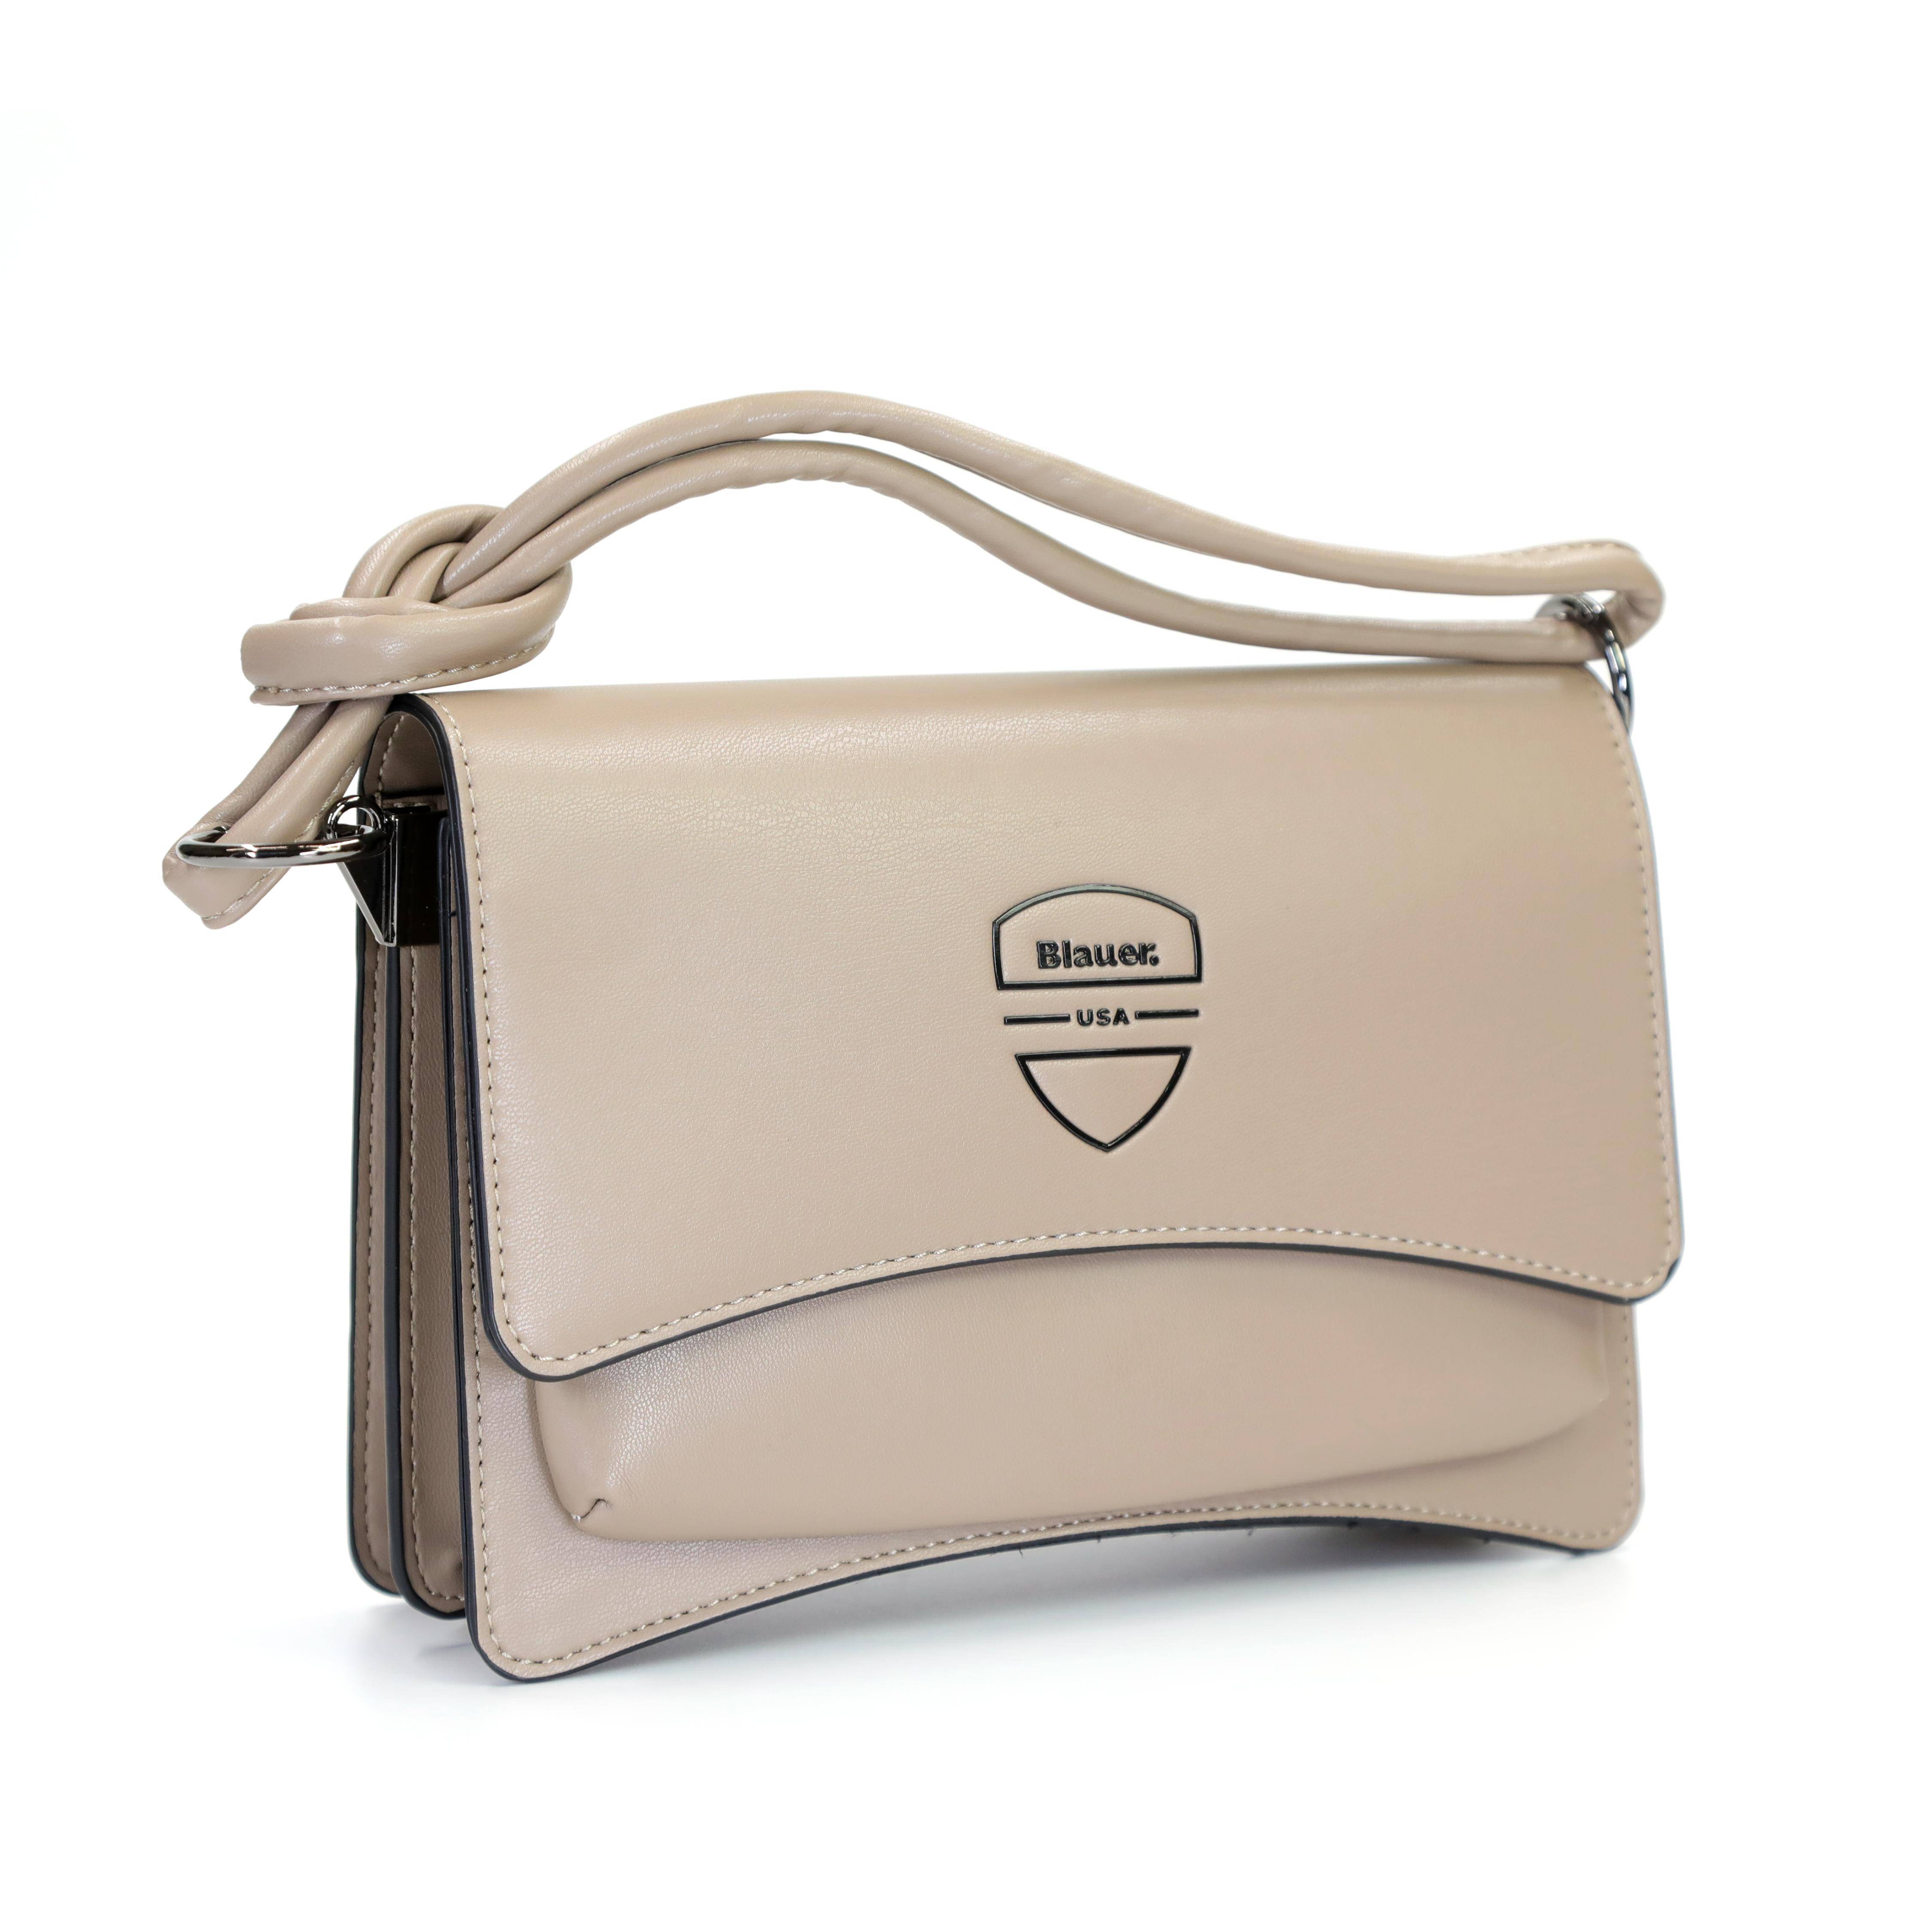 Женская сумка Blauer, бежевая, цвет бежевый, размер ONE SIZE - фото 2